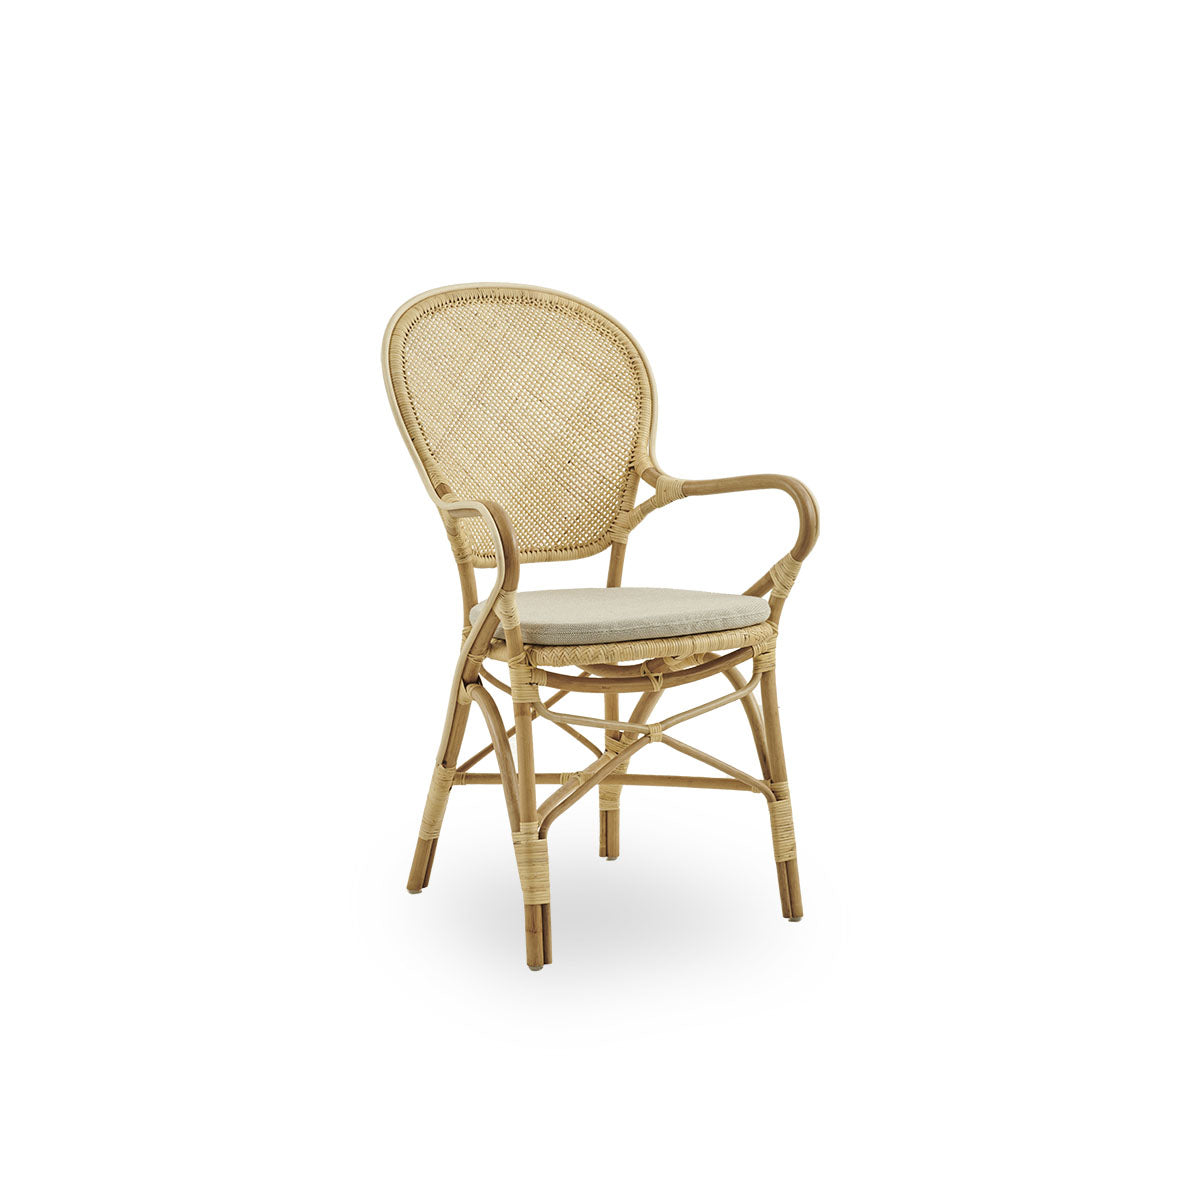 Sika Design シカデザイン Rossini Arm Chair9枚目が市場目立つ傷です